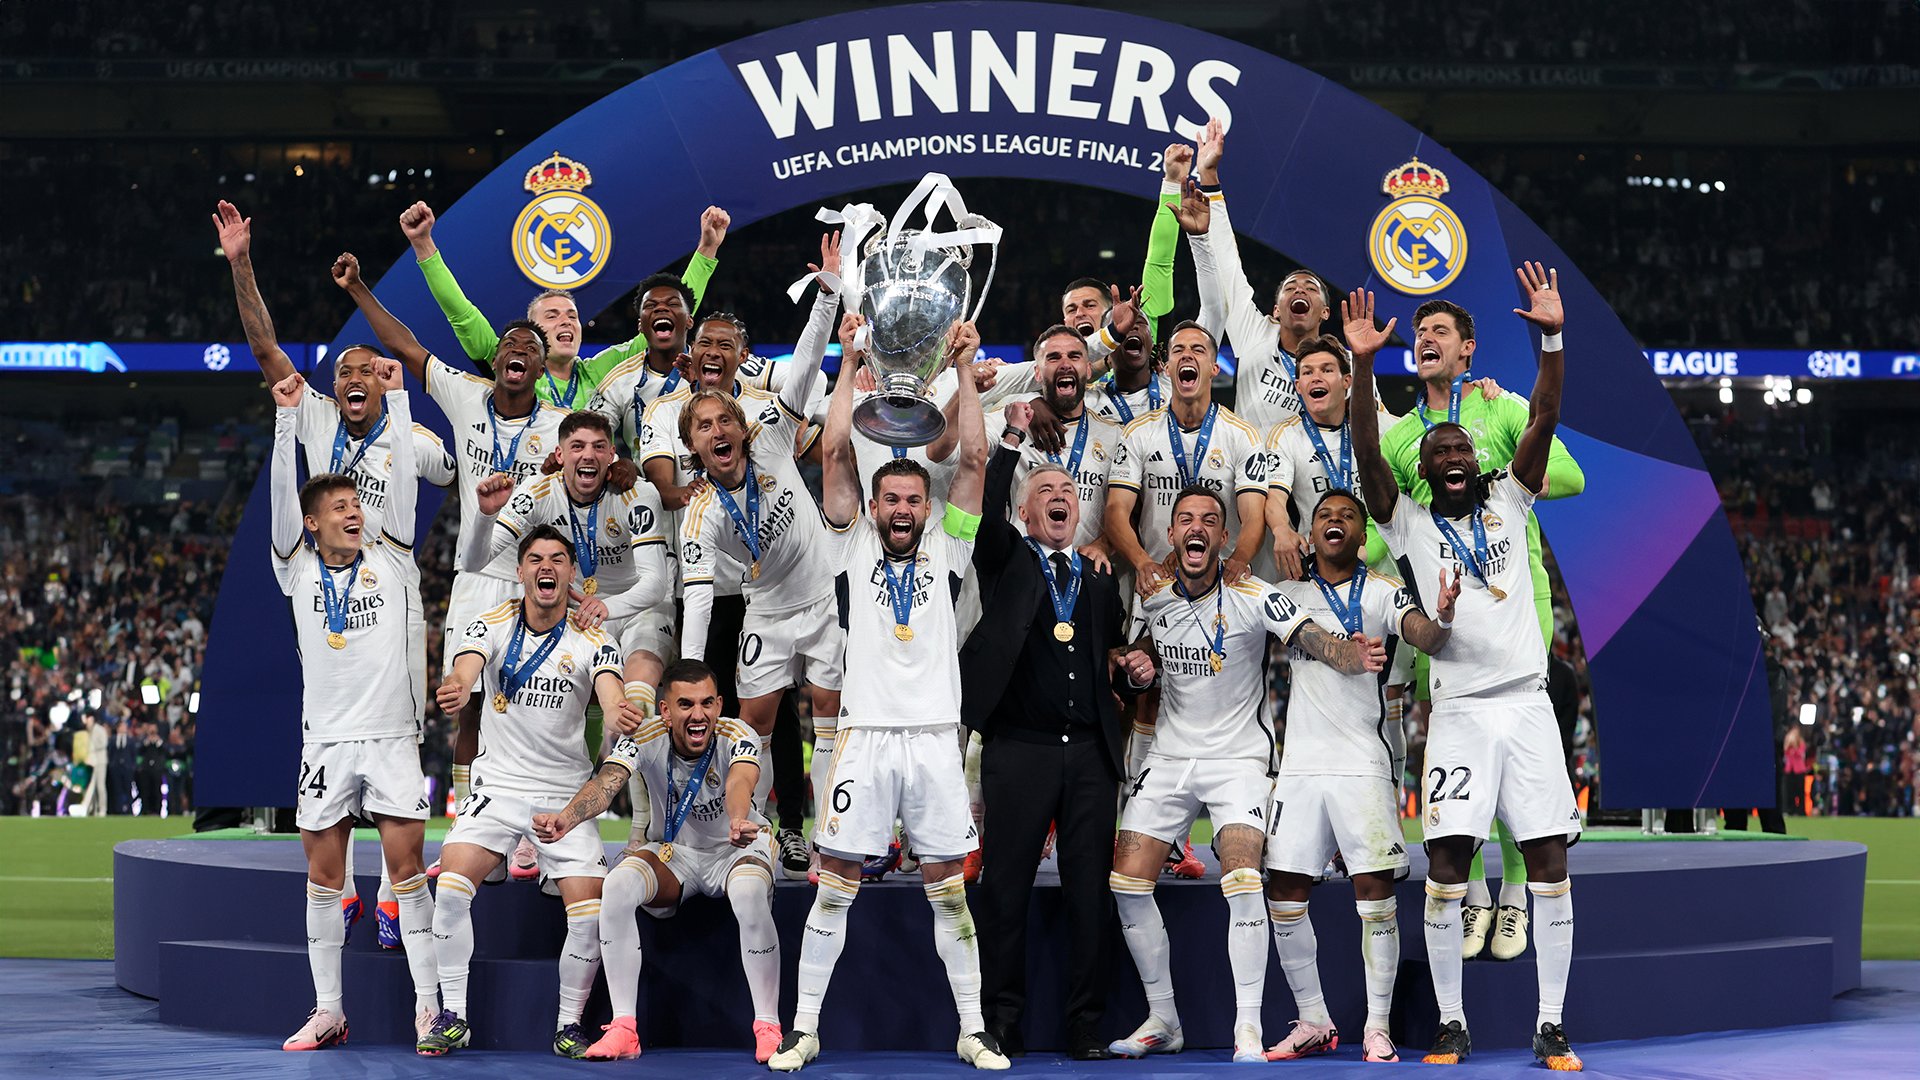 Rey de Europa: Real Madrid conquista la decimoquinta Champions League